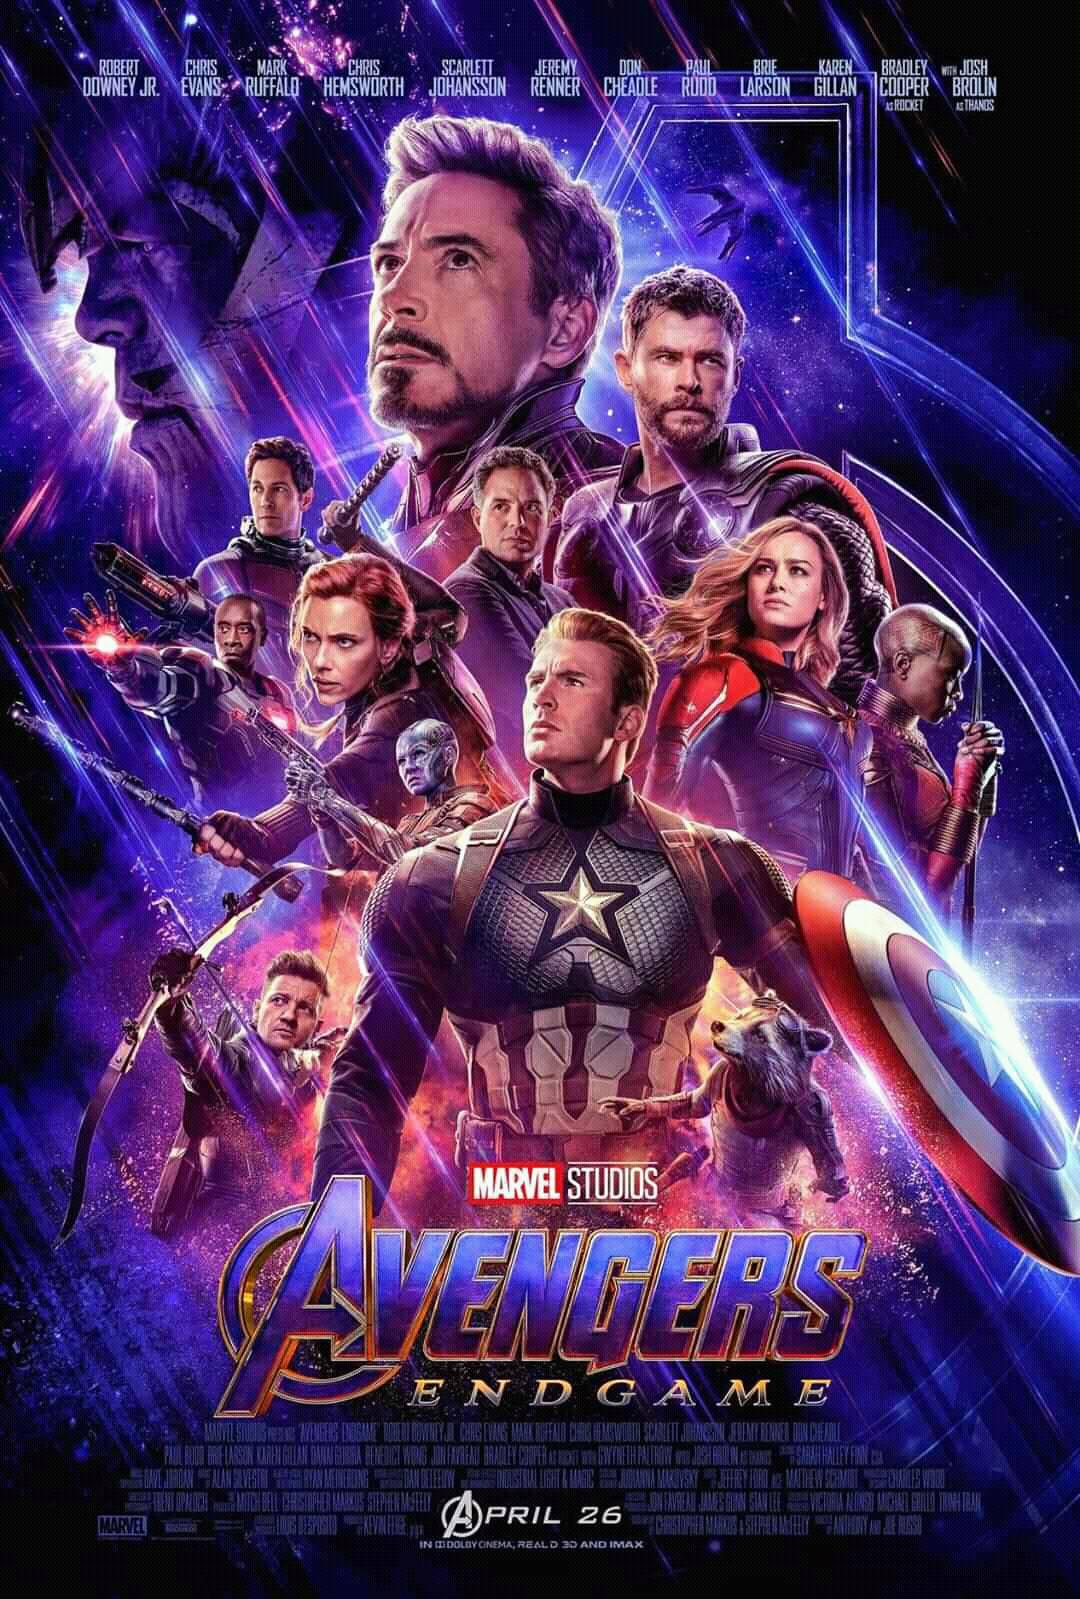 Avengers: Endgame - 2019 Marvel Studios Full Movie Free Online